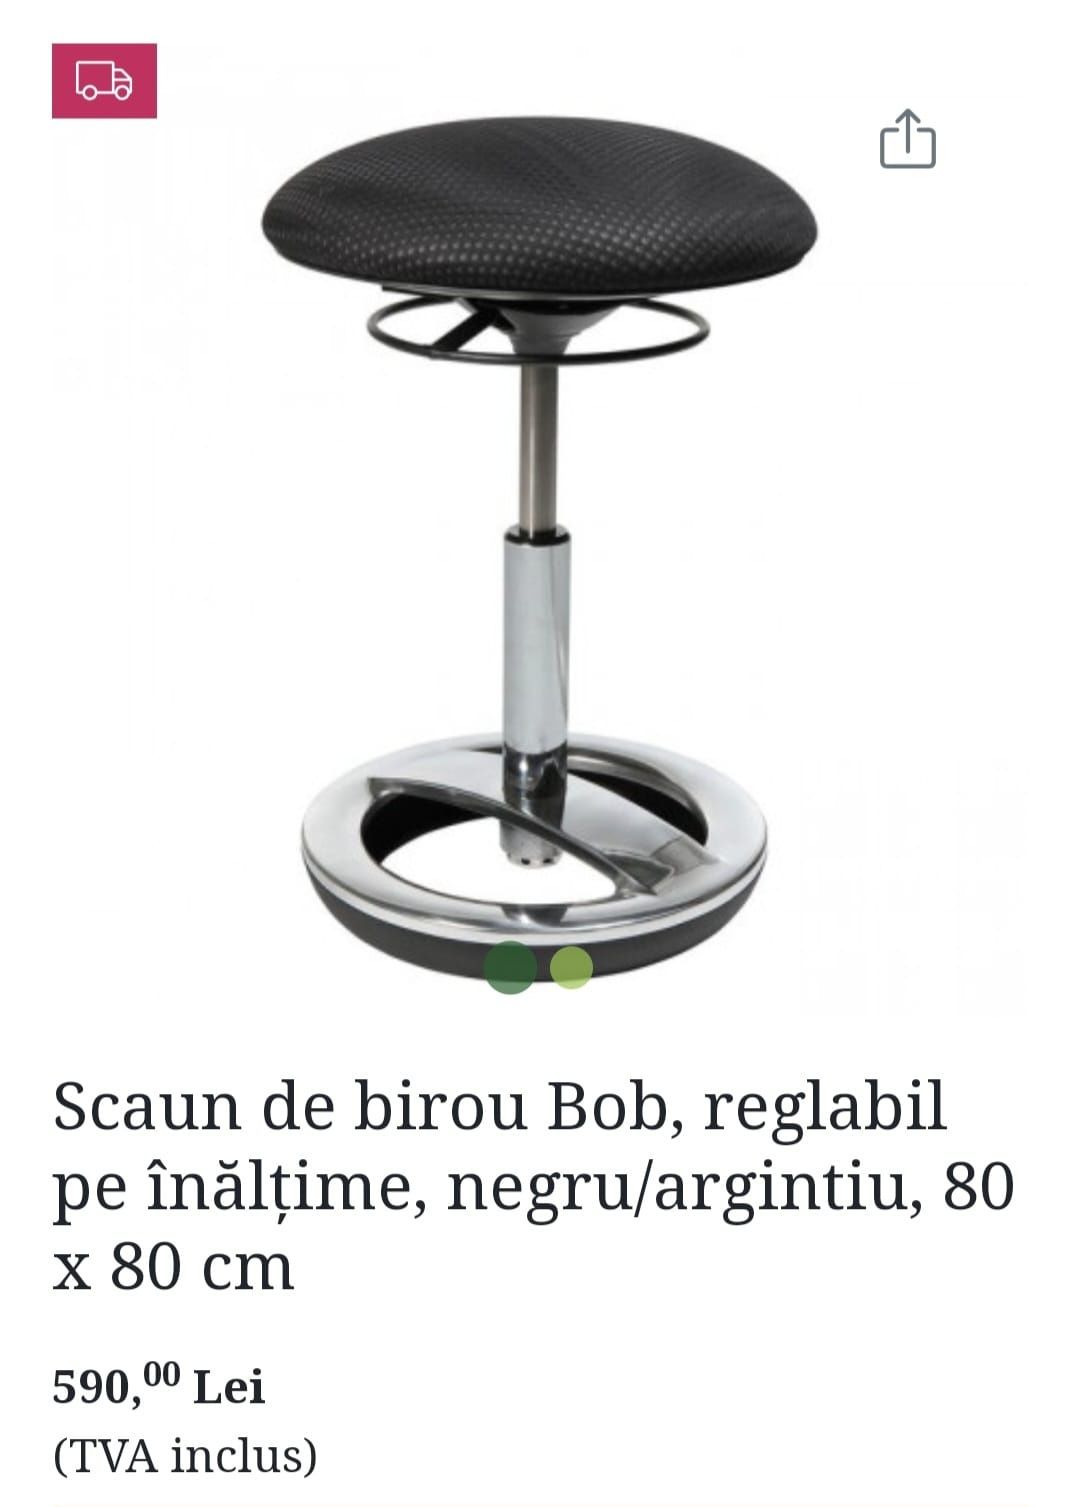 Scaun ergonomic birou/coafor/bar/fitness